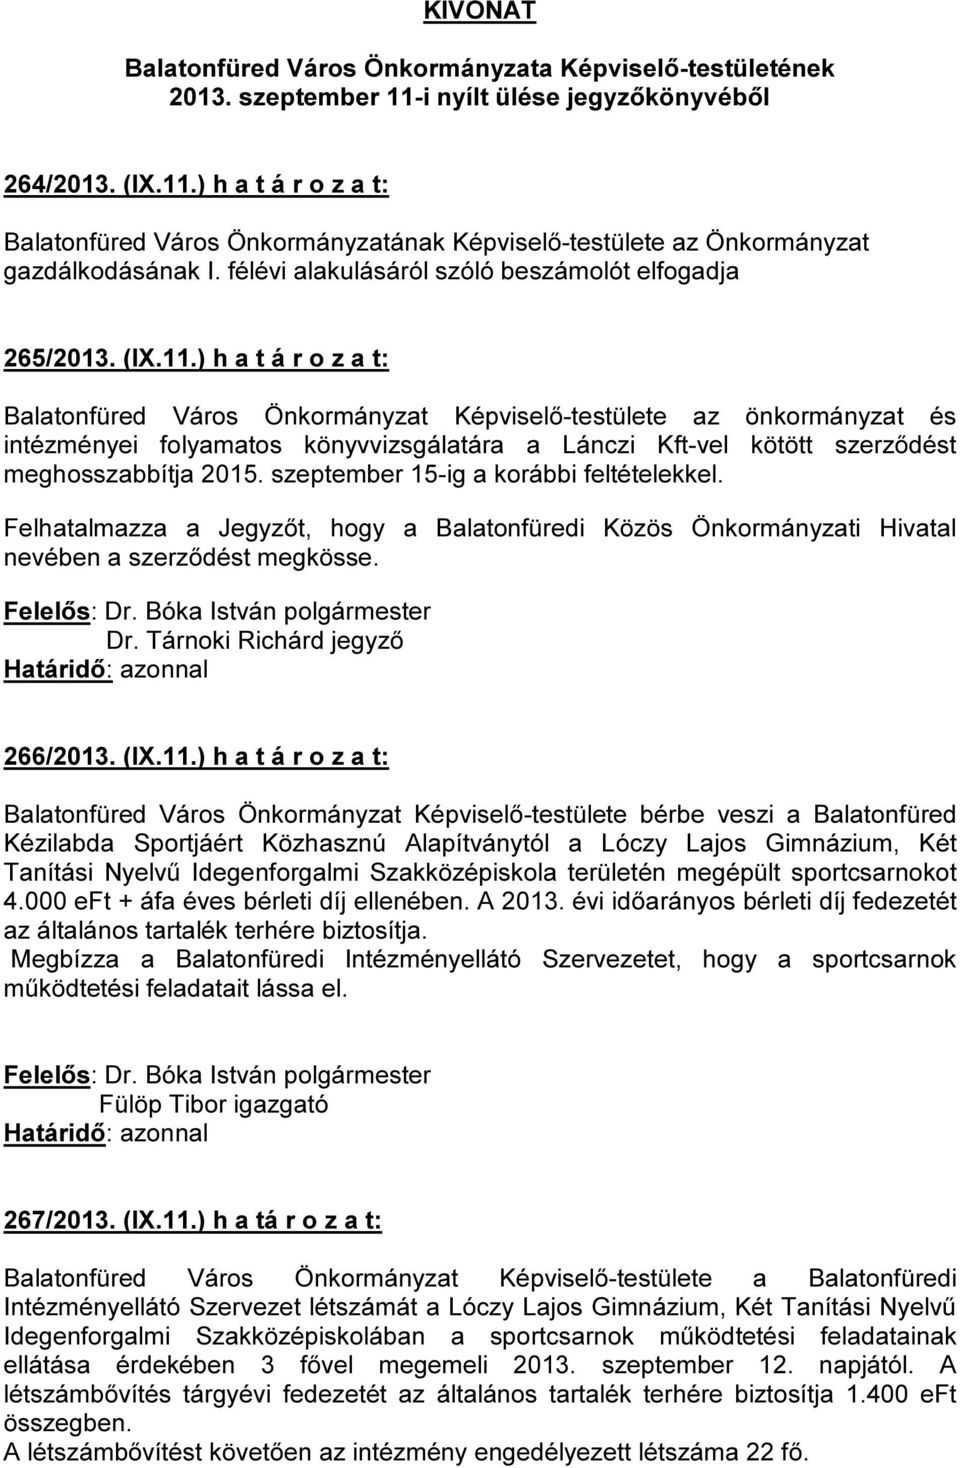 ) h a t á r o z a t: Balatonfüred Város Önkormányzat Képviselő-testülete az önkormányzat és intézményei folyamatos könyvvizsgálatára a Lánczi Kft-vel kötött szerződést meghosszabbítja 2015.